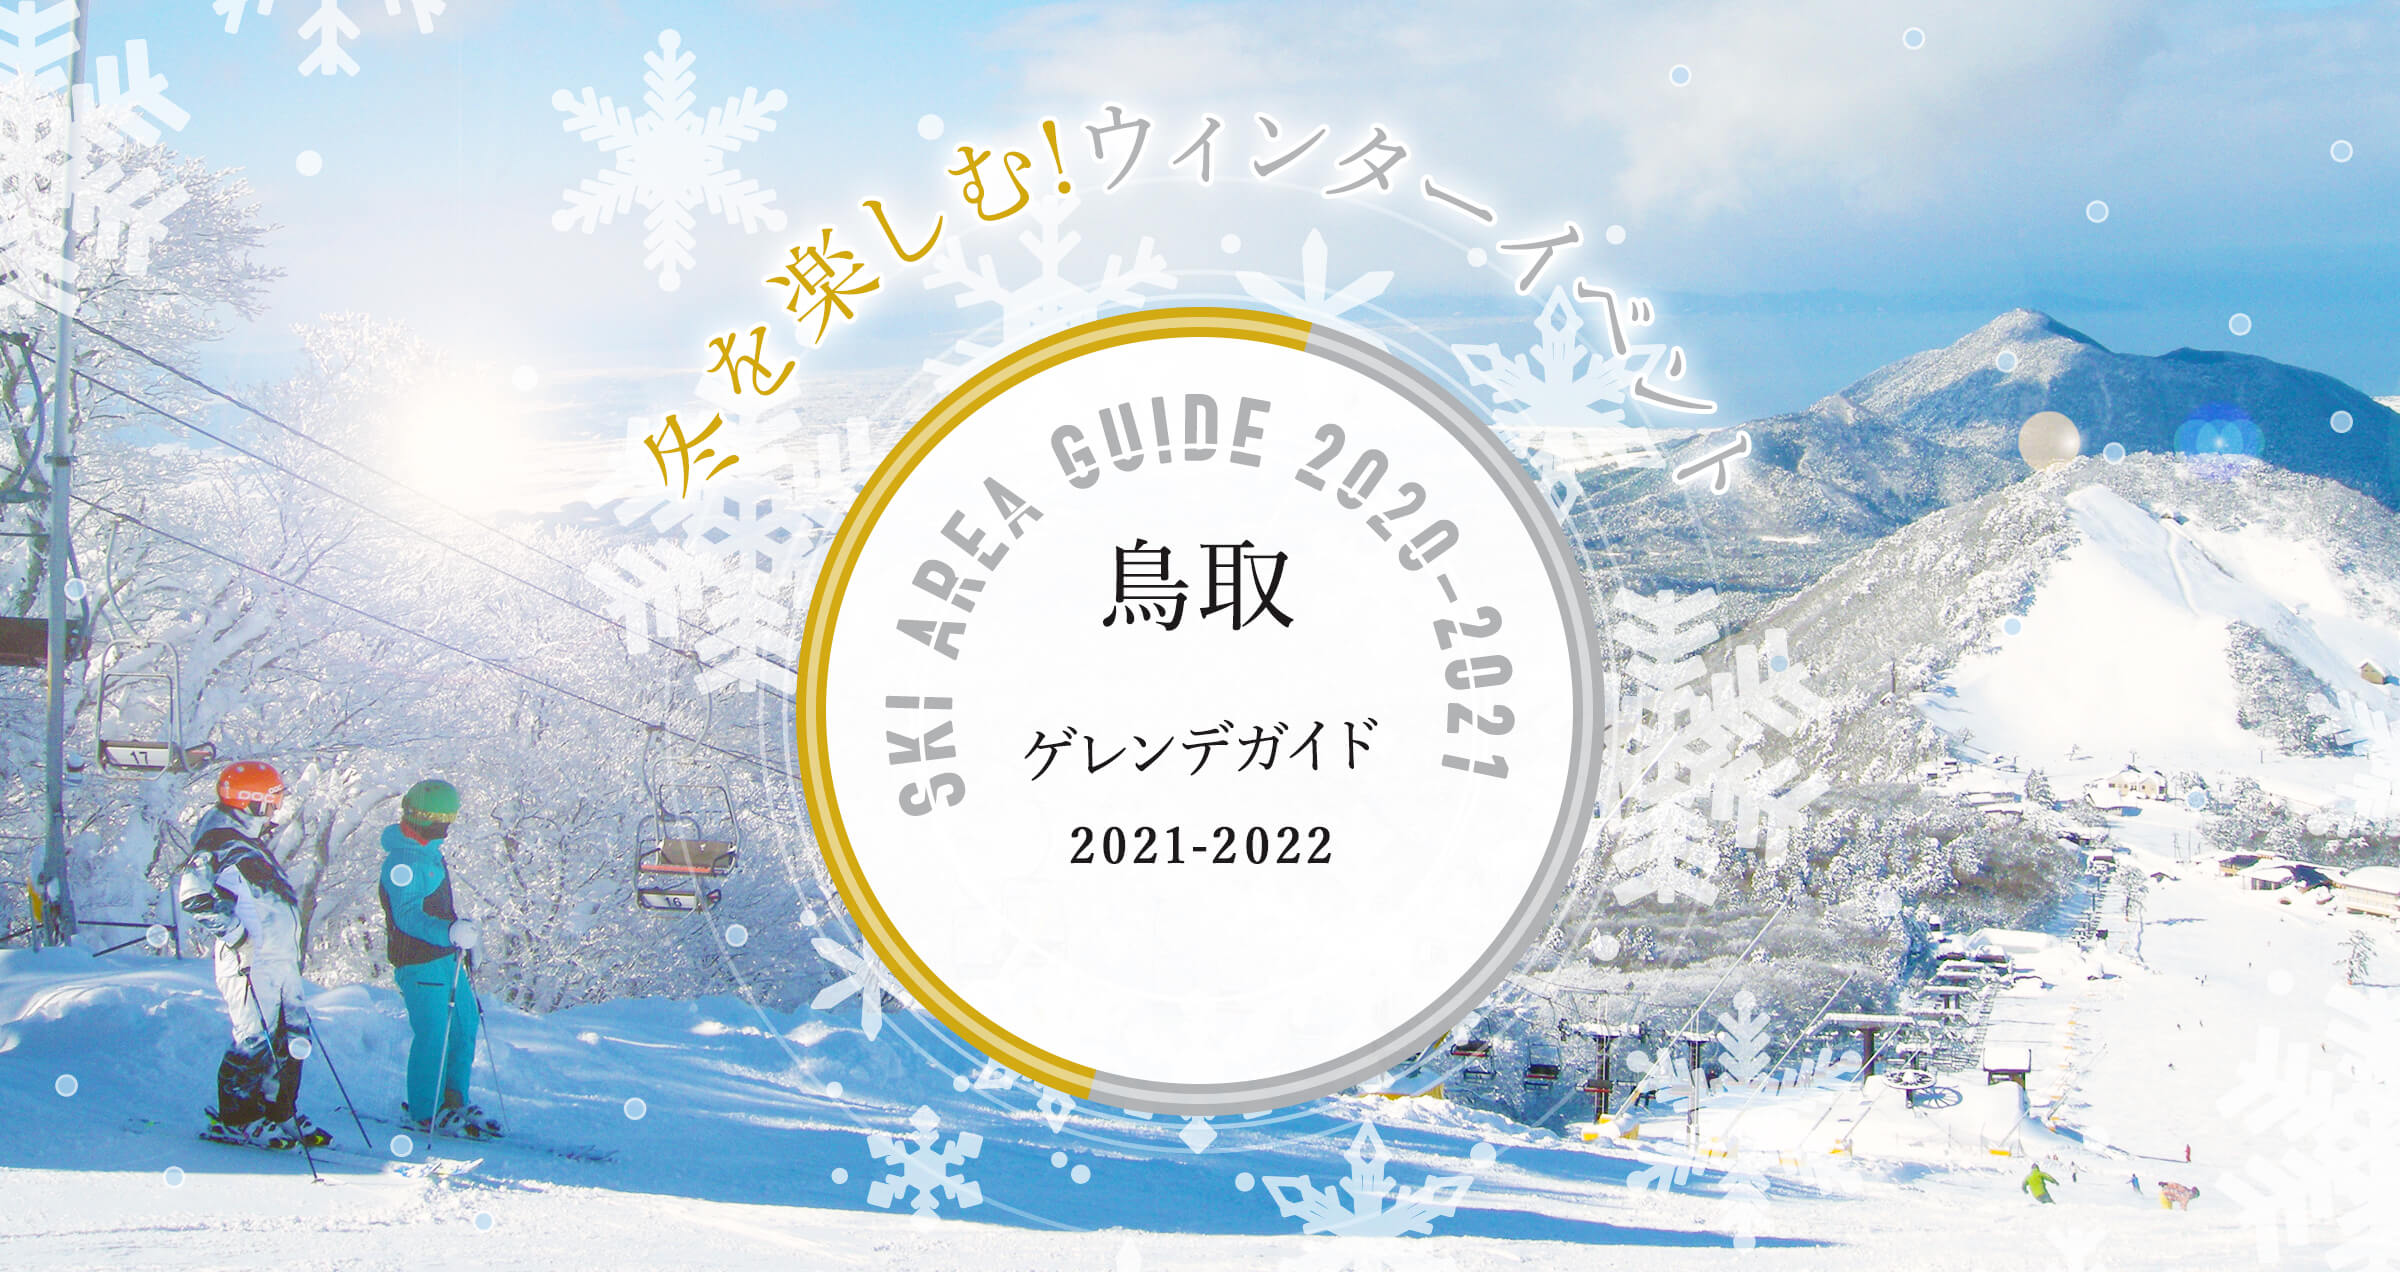 鳥取 イルミネーション & ゲレンデ ガイド 2019 冬を楽しむ!ウィンターイベント